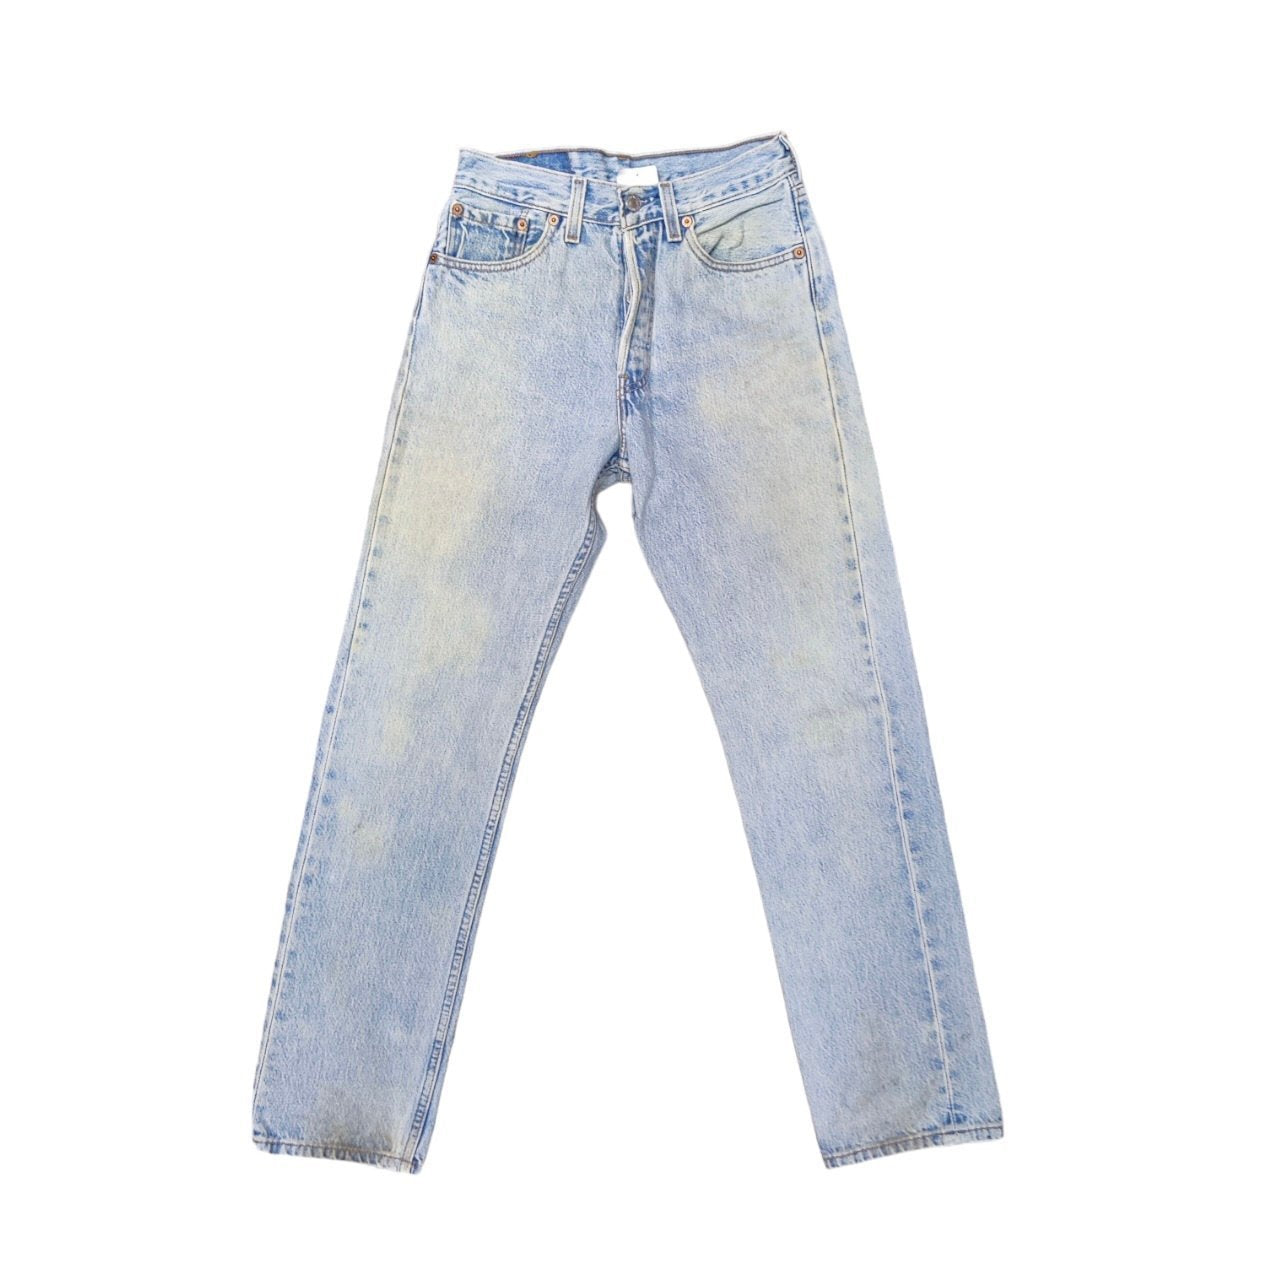 Vintage Levis 501 Light Blue Jeans (W27/L30) (W)